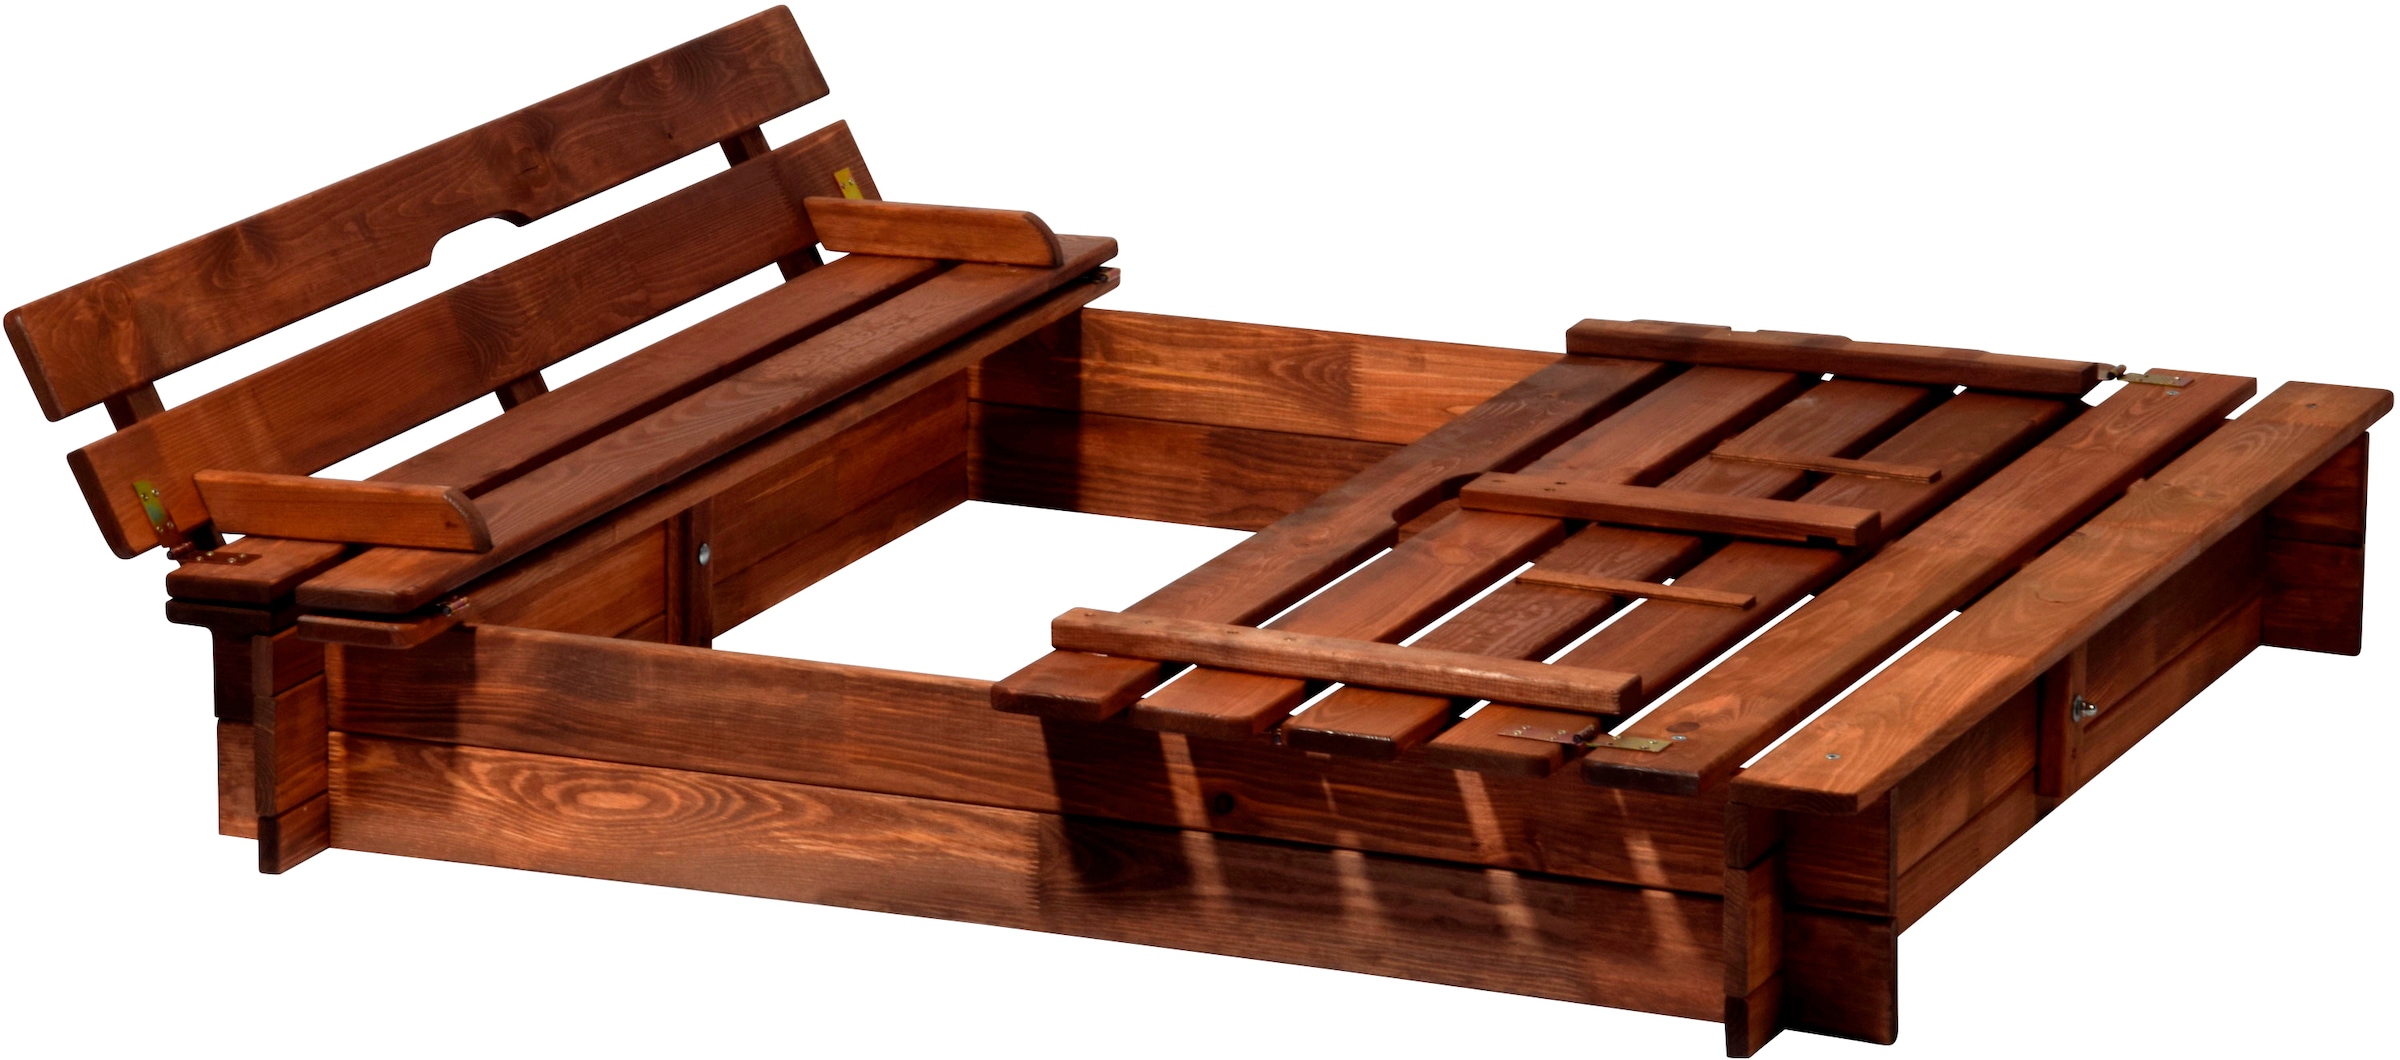 Sandkasten aus dunklem Holz mit Sitzbank